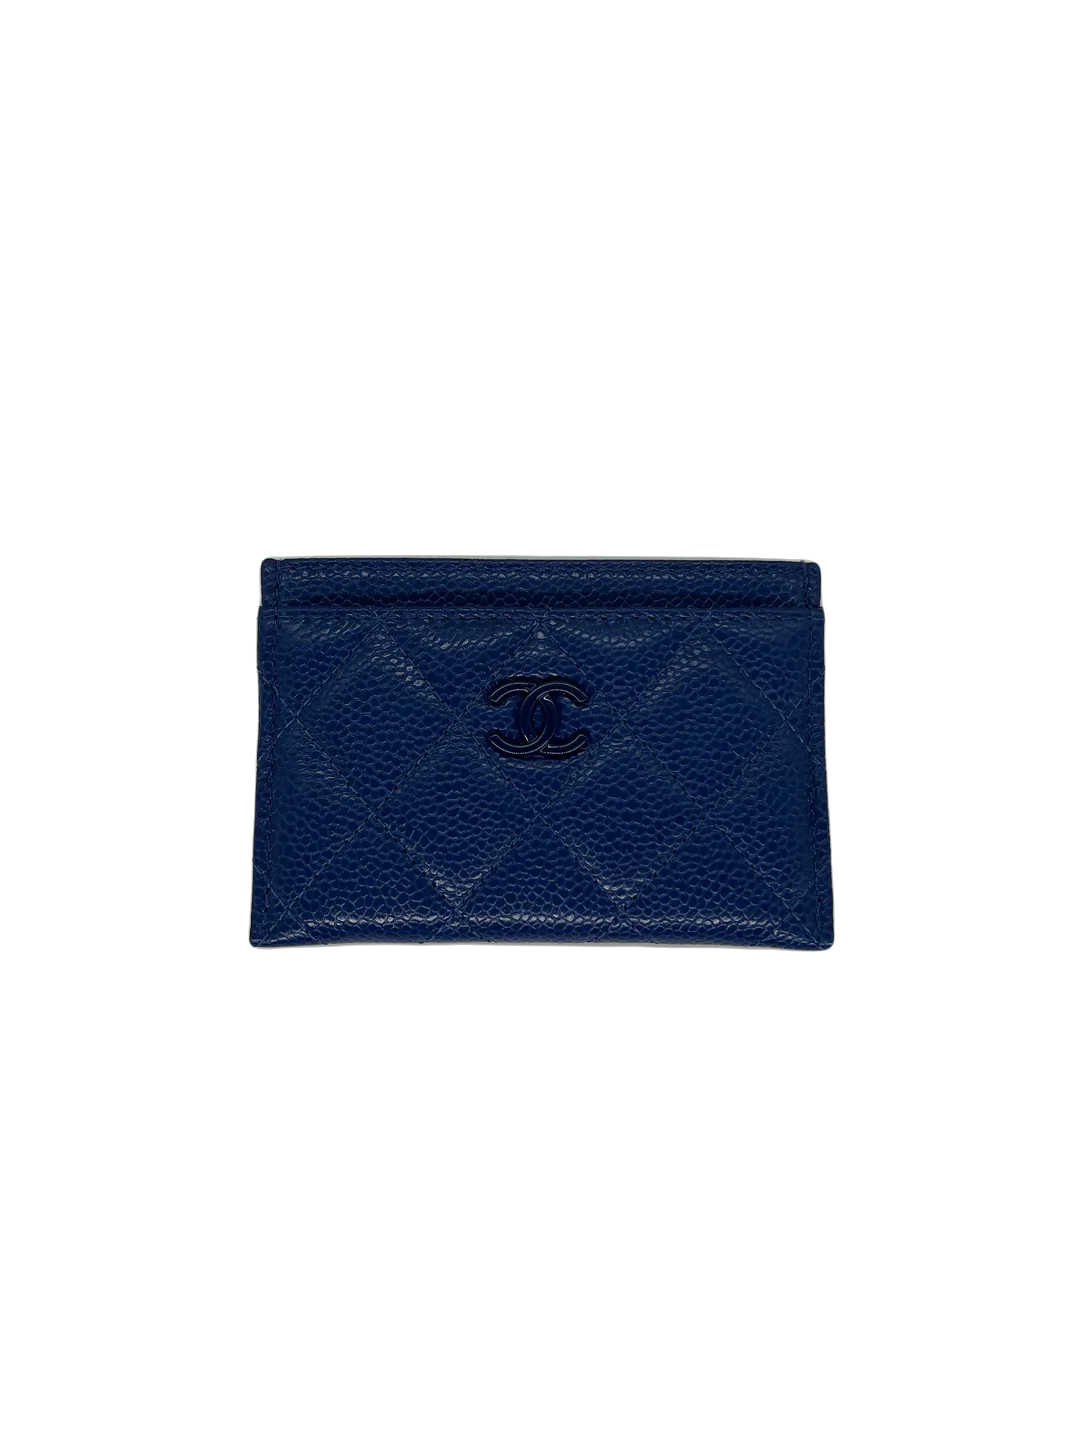 Chanel Card Holder - Blue - SOLD